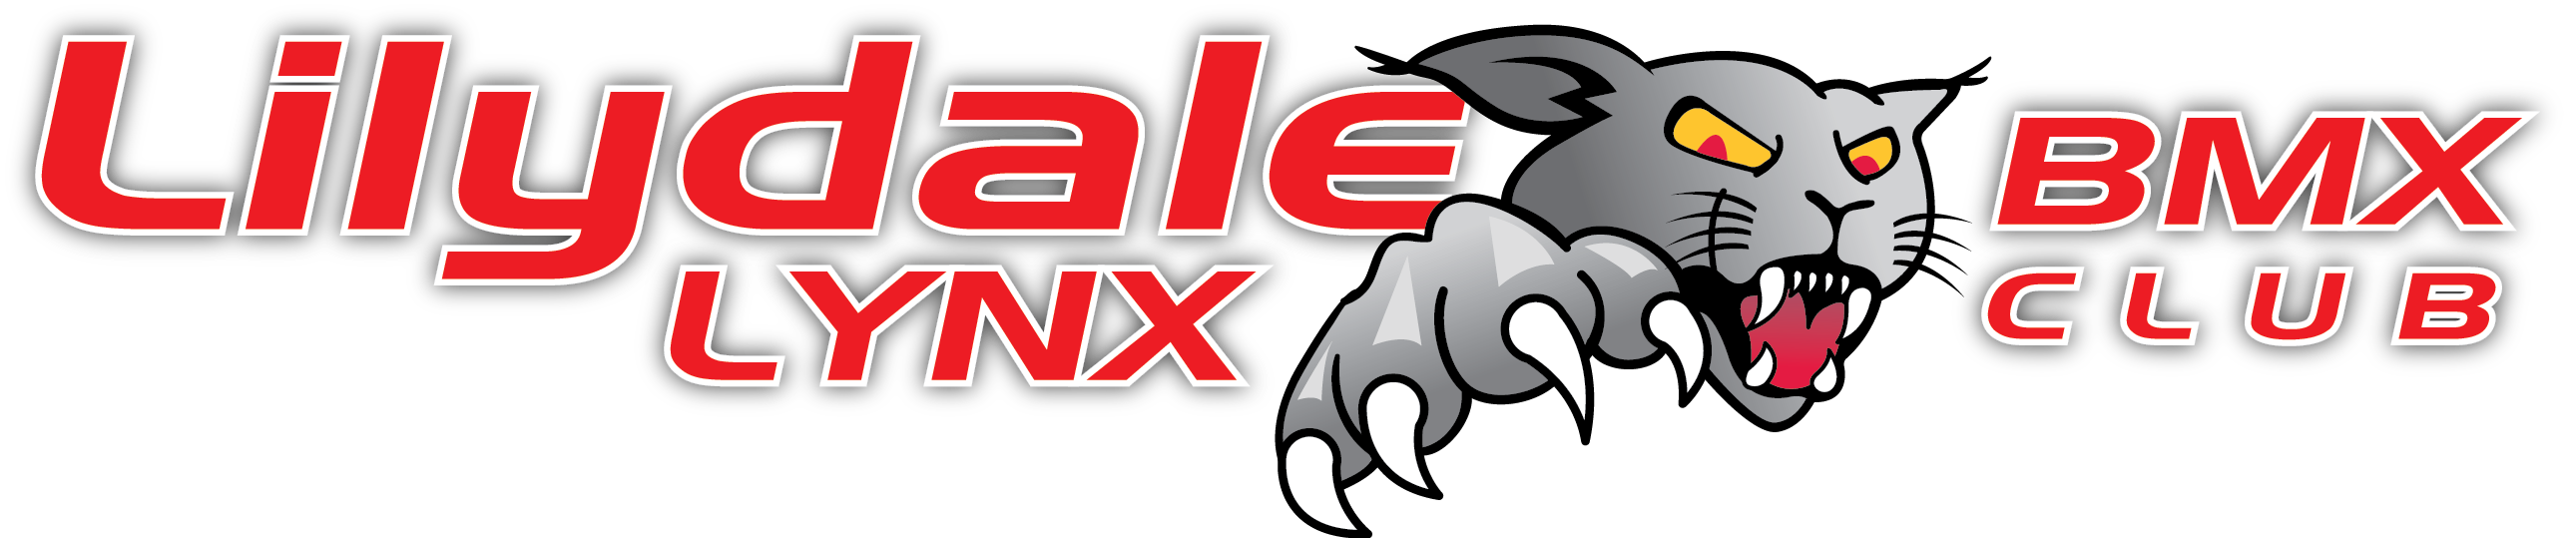 Lilydale Lynx BMX Club